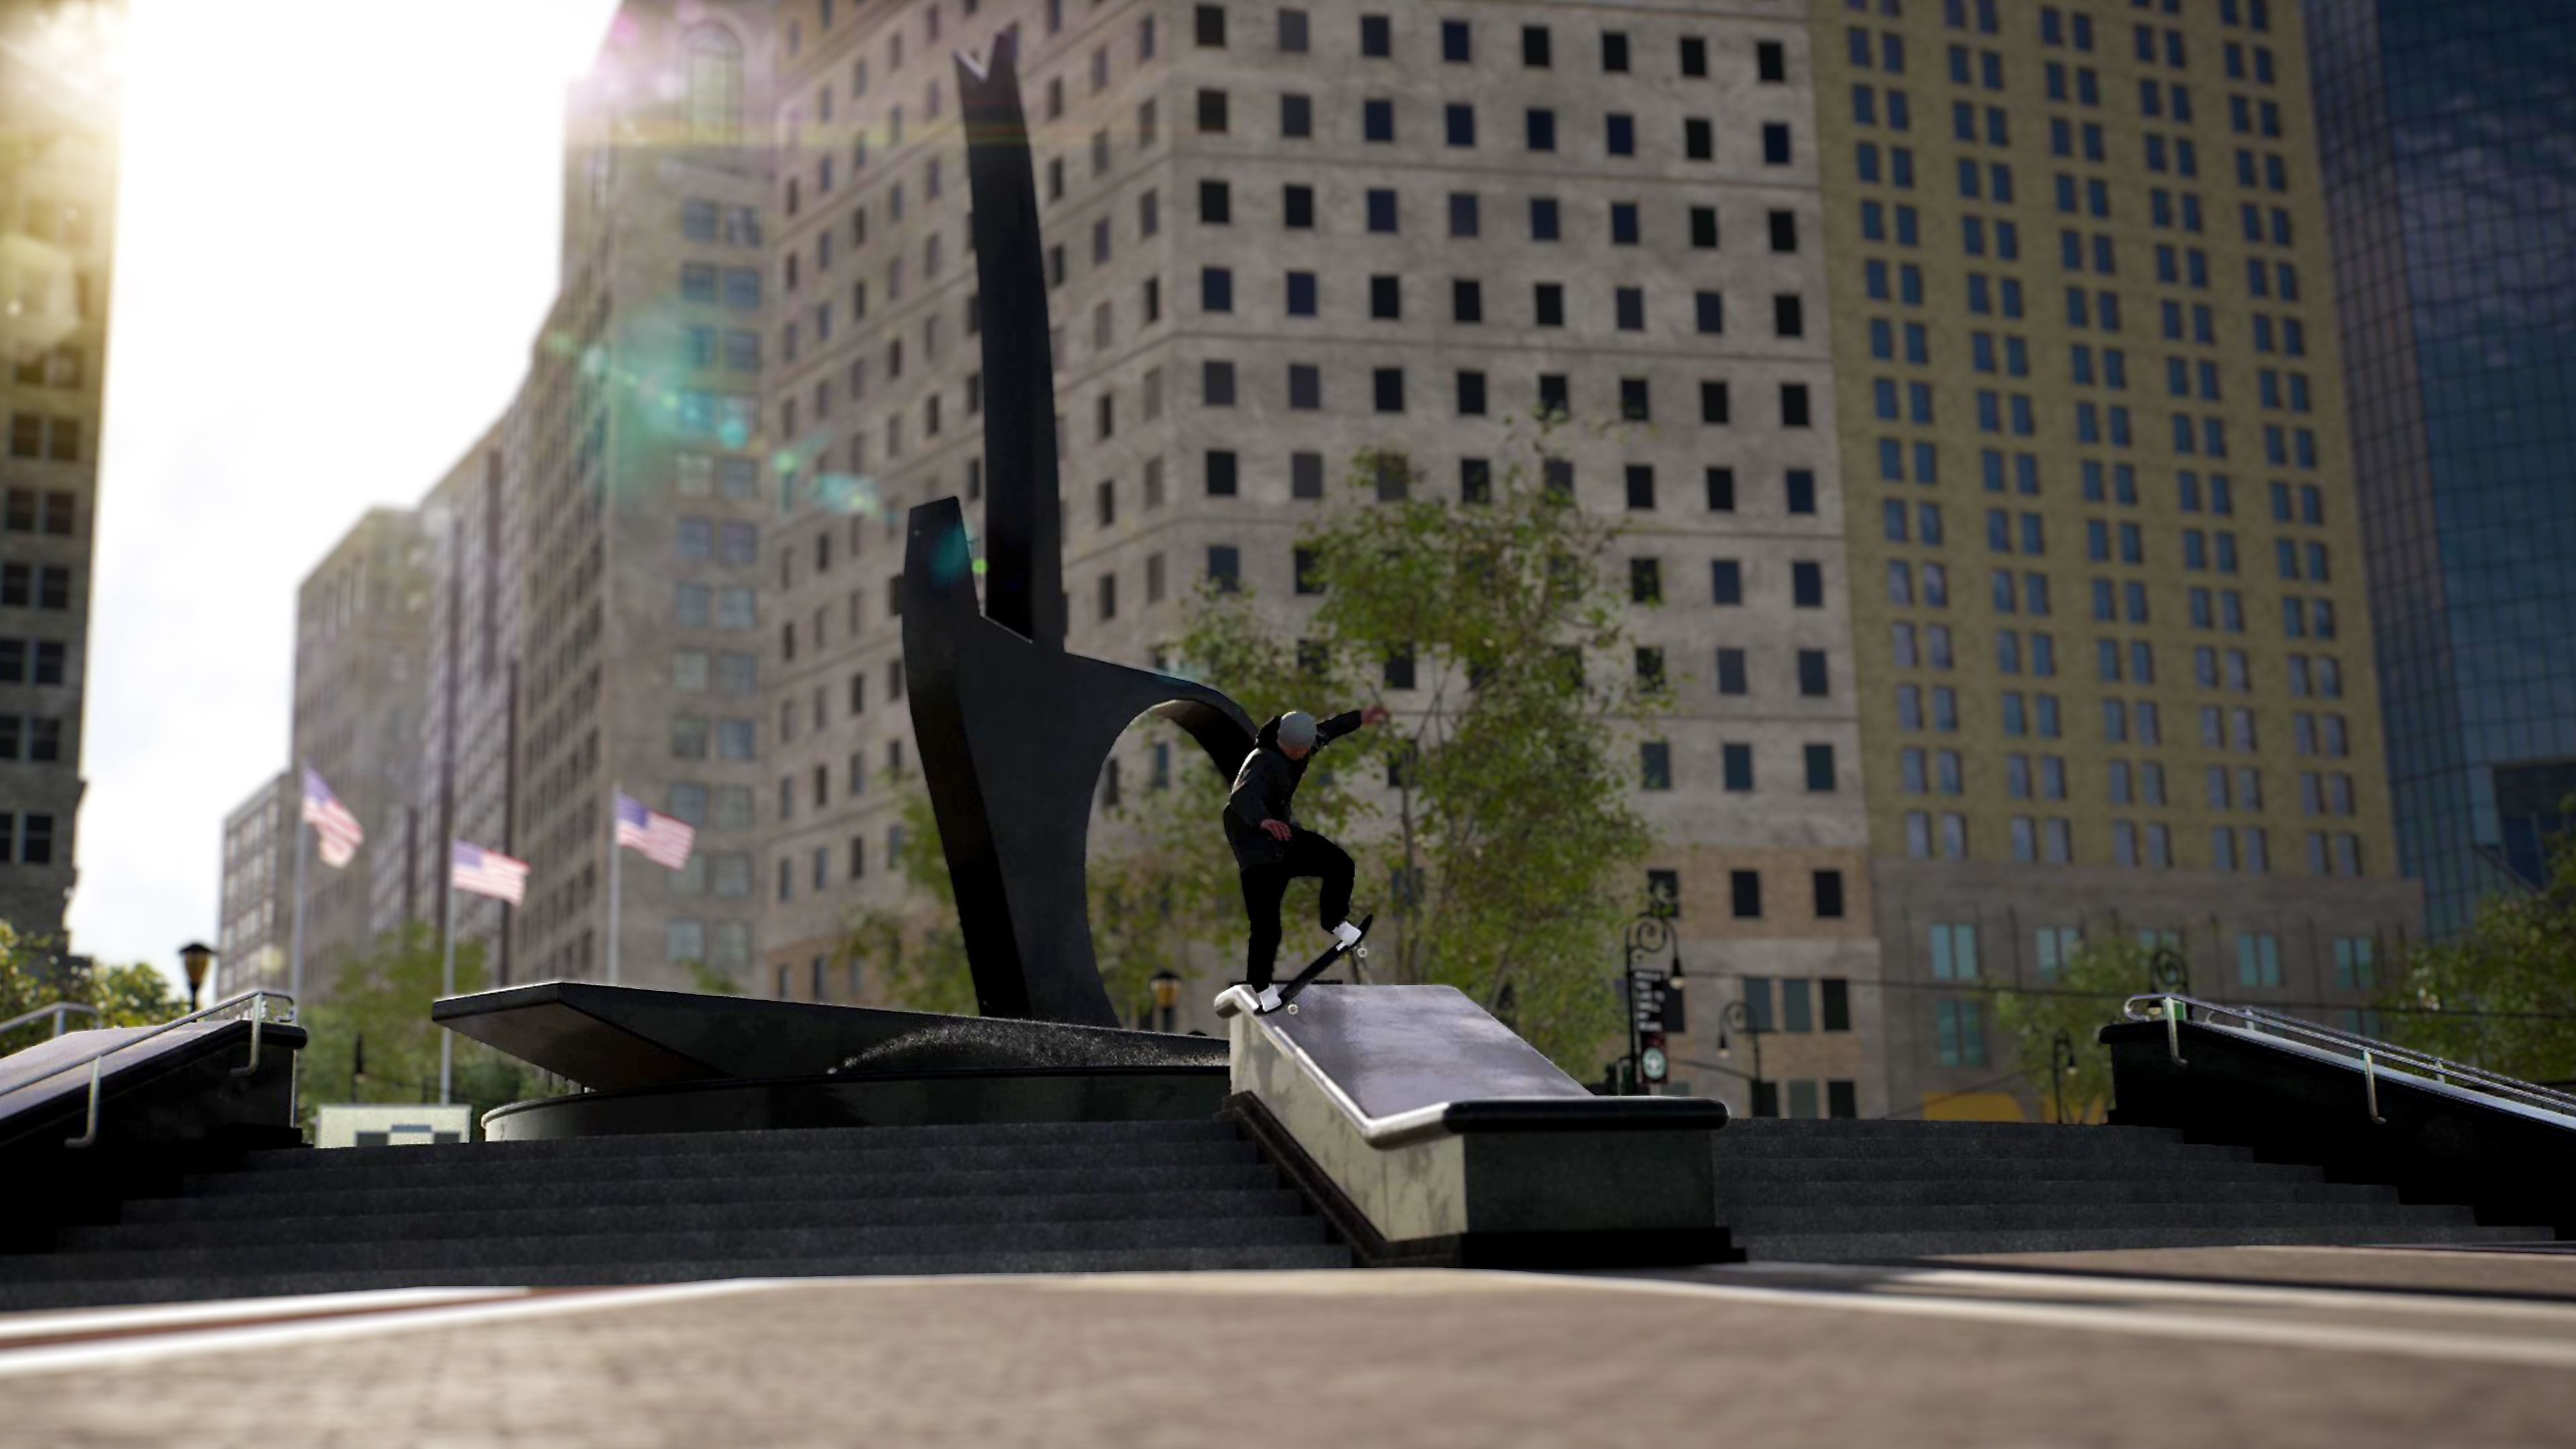 Session: Skate Sim – kuvakaappaus skeittarista grindaamassa reunalla kaupungin aukiolla